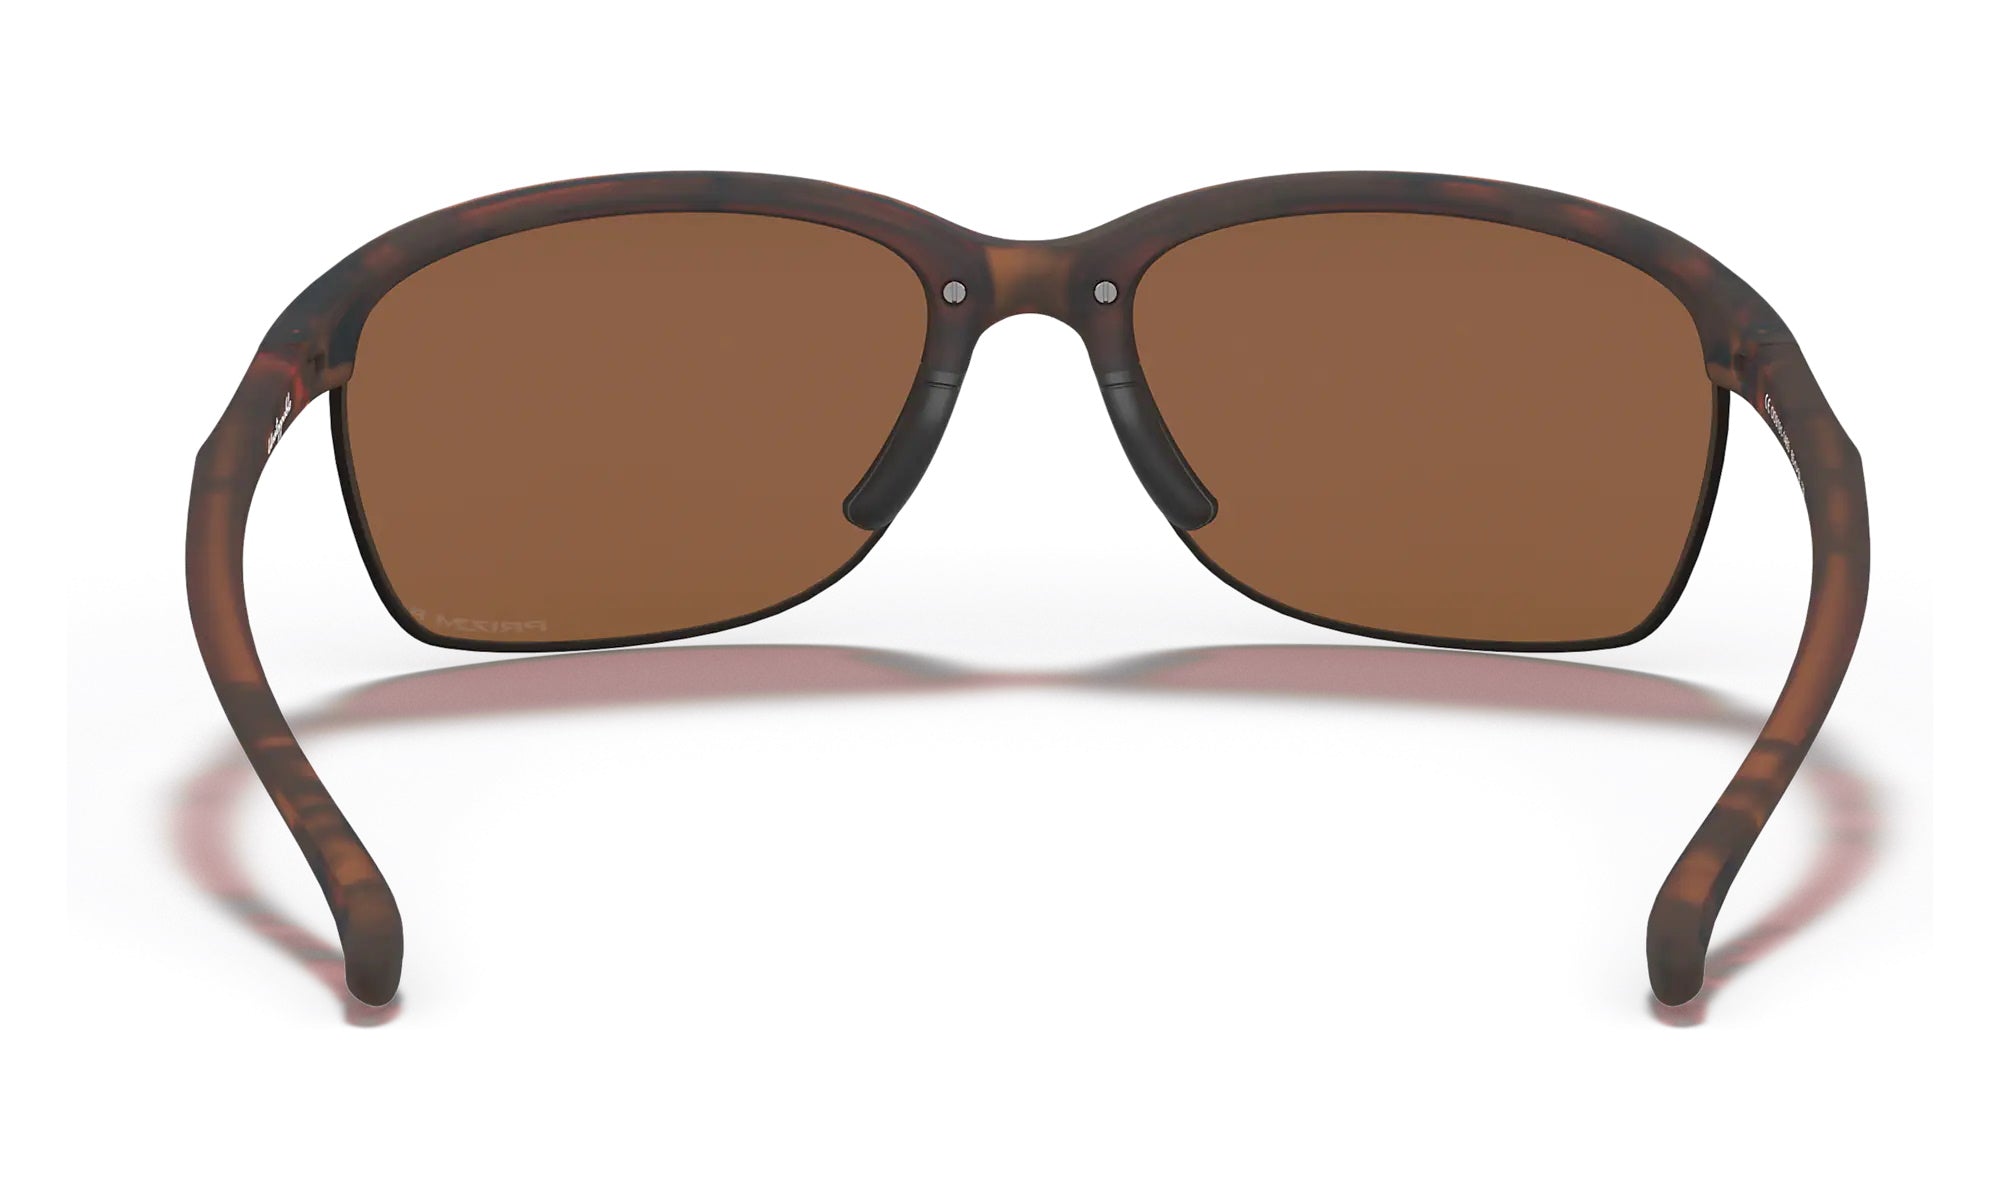 Oakley Unstoppable Sunglasses Matte Brown Tortoise Frame PRIZM Tungsten Polarized Lens